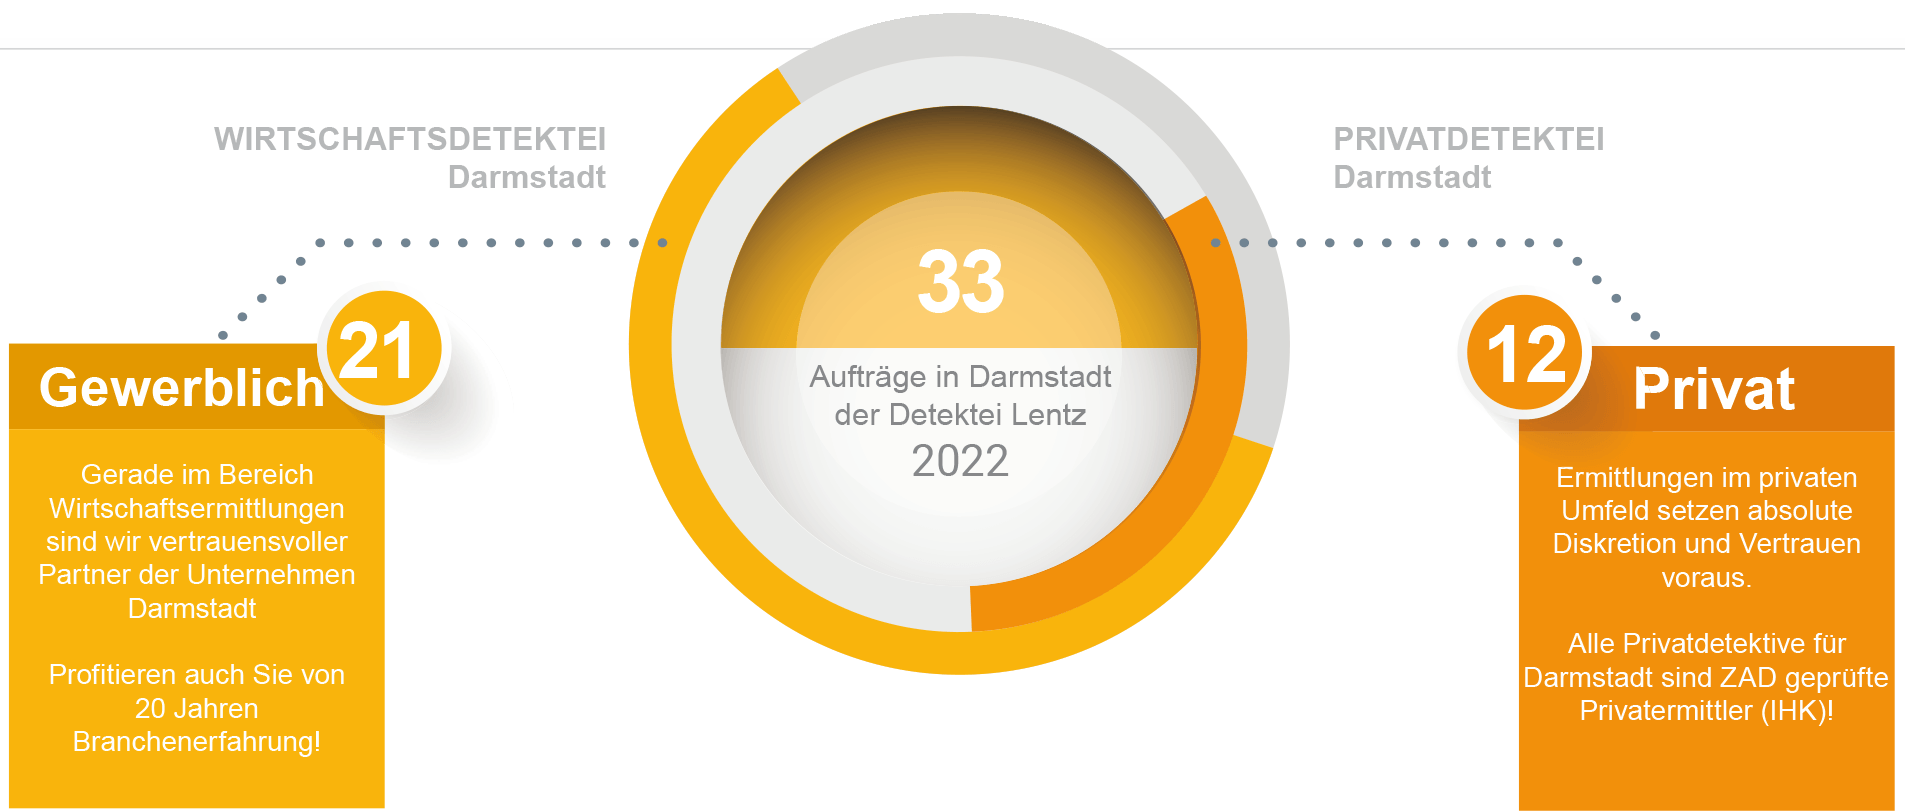 Aufträge für 2022 der Detektei Darmstadt